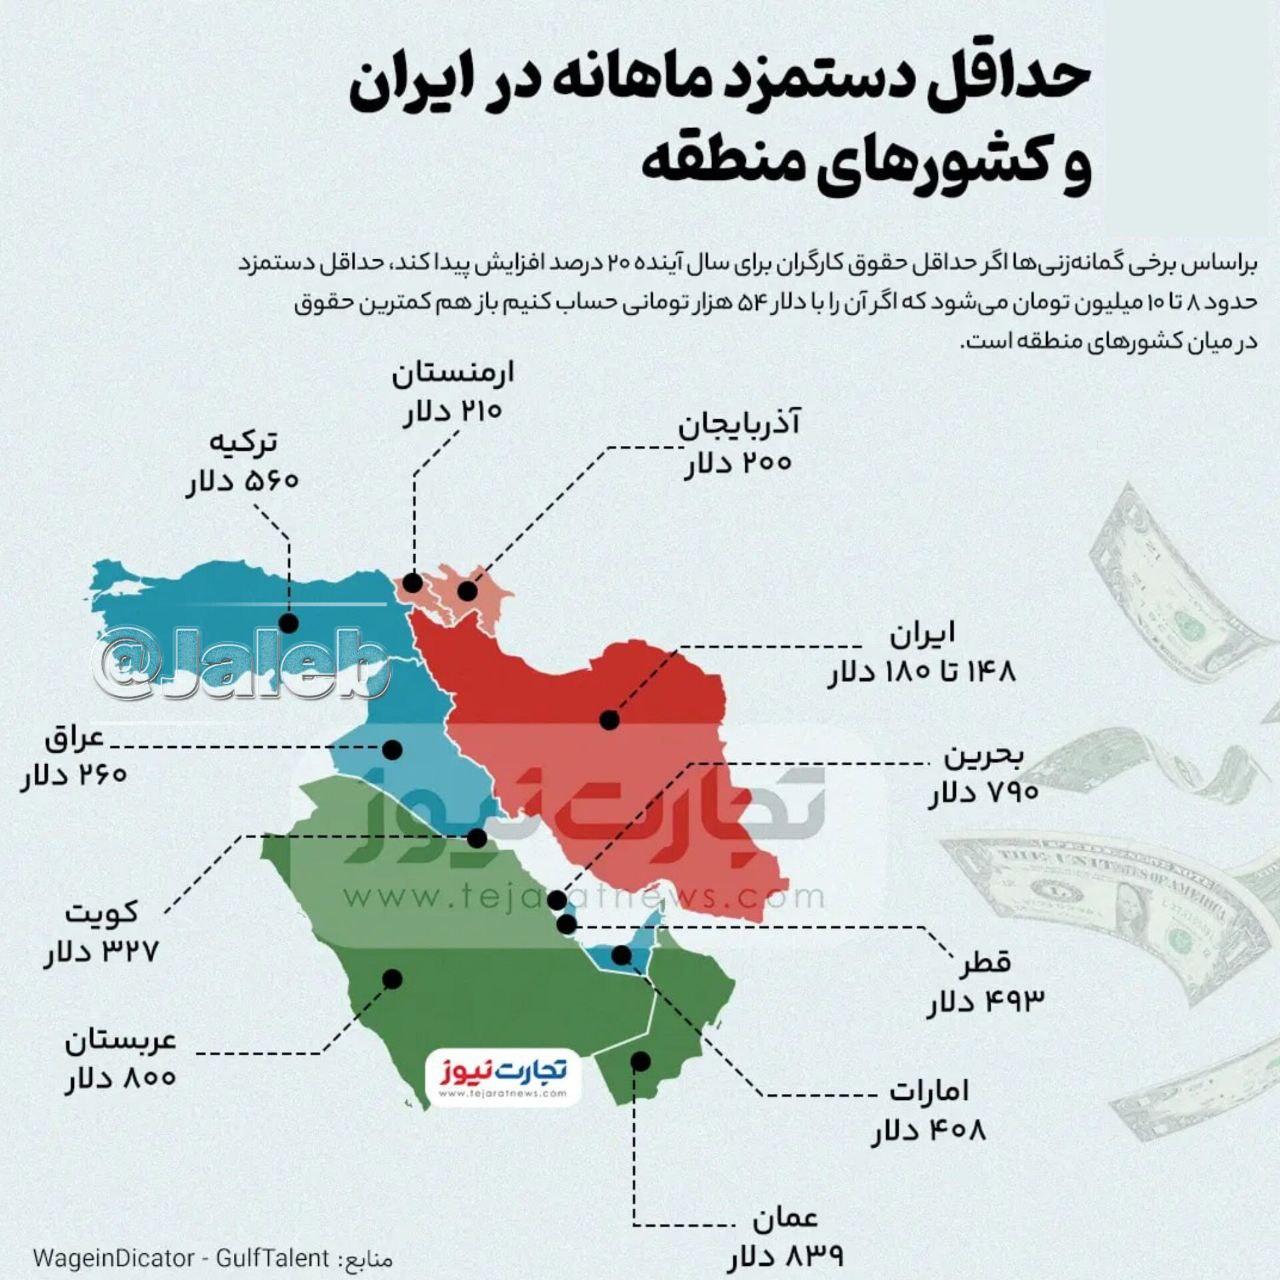 حداقل دستمزد ماهانه در ایران و کشورهای منطقه📊